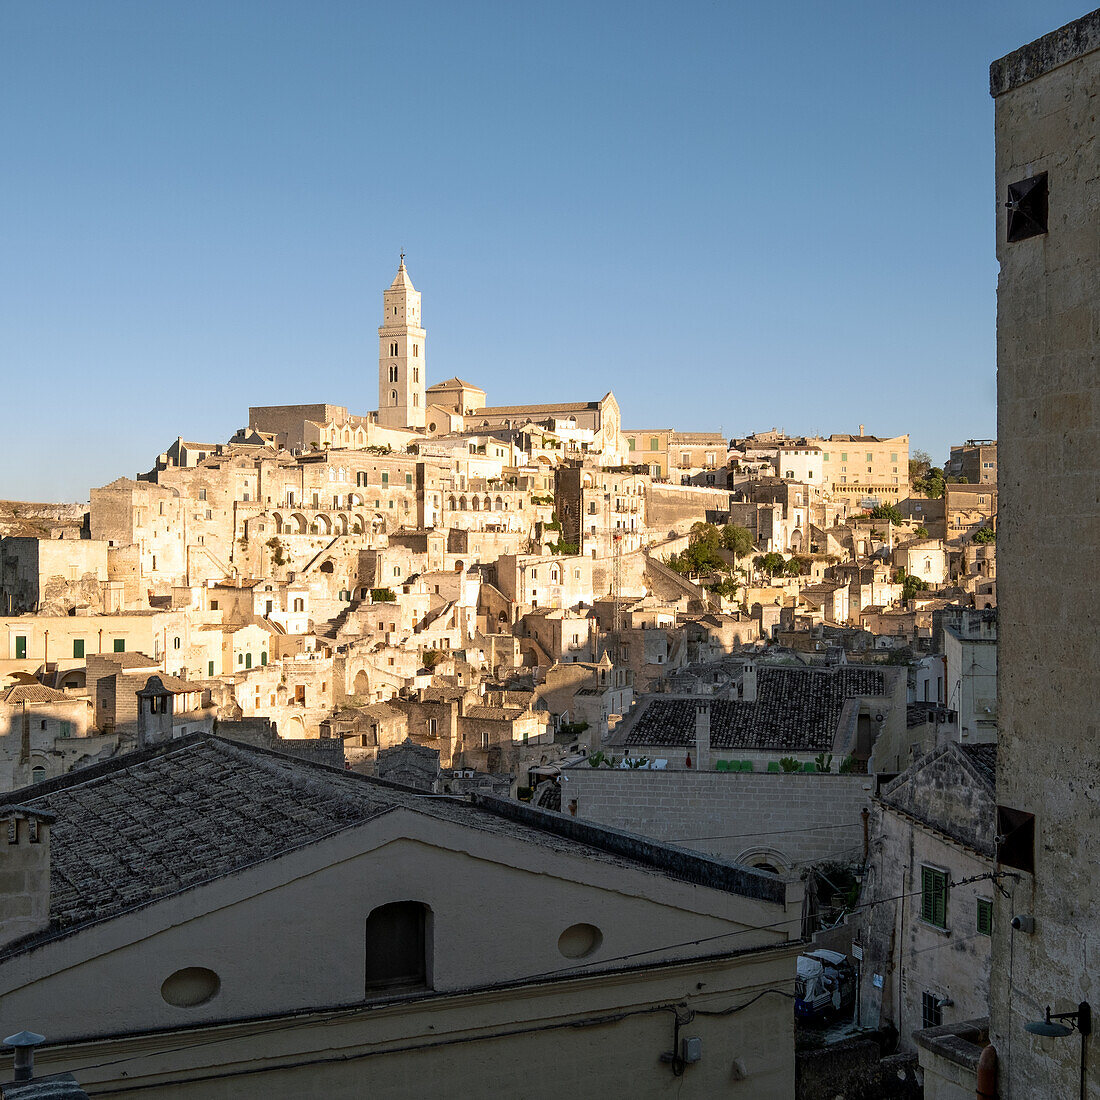 Italy, Basilicata, Matera, View of medieval town